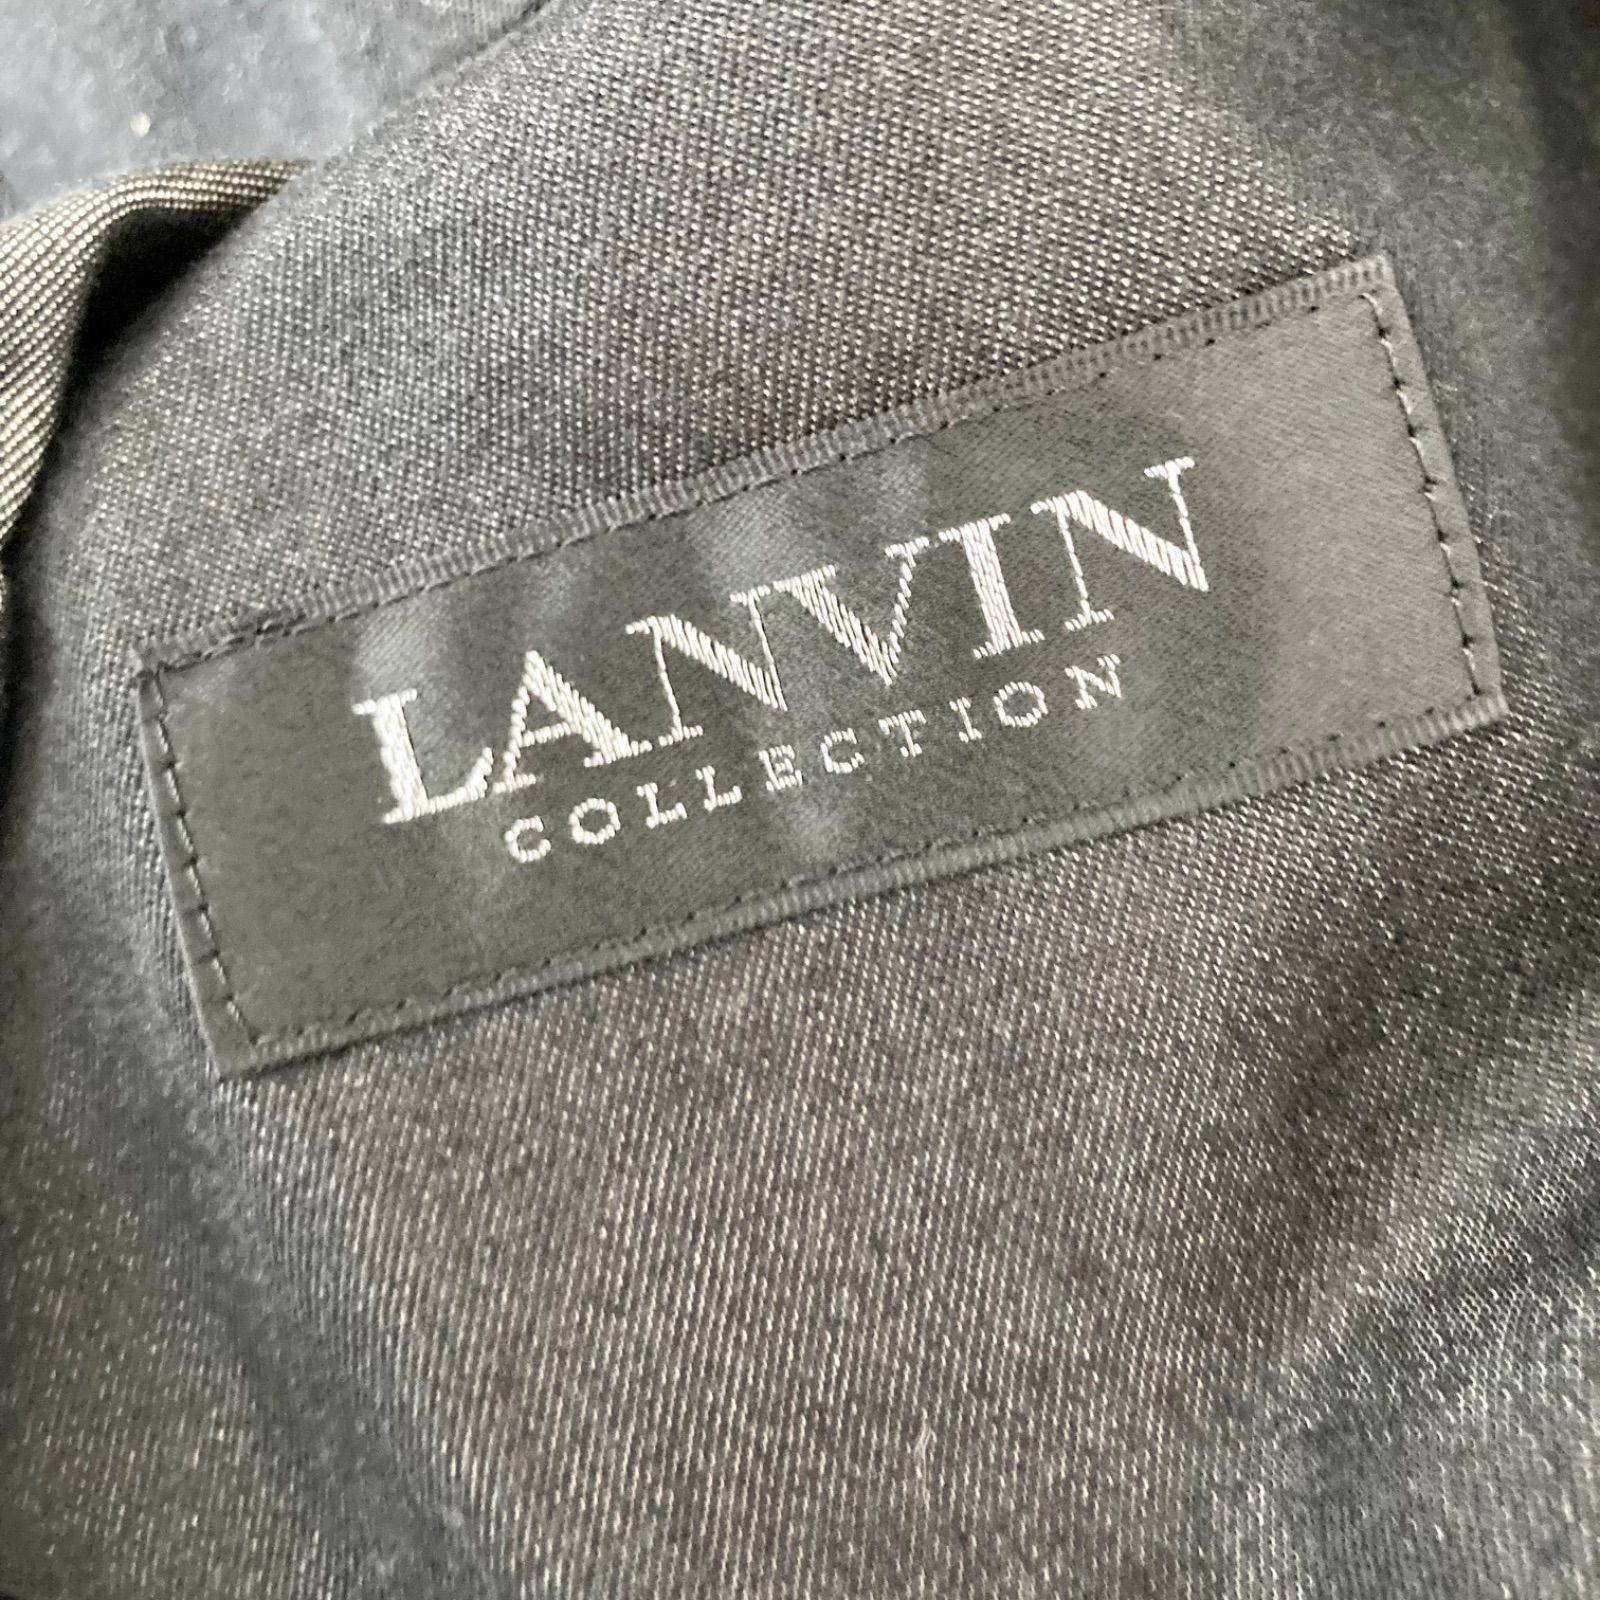 中古品 LANVIN COLLECTION テーラードジャケット 50サイズ - メルカリ